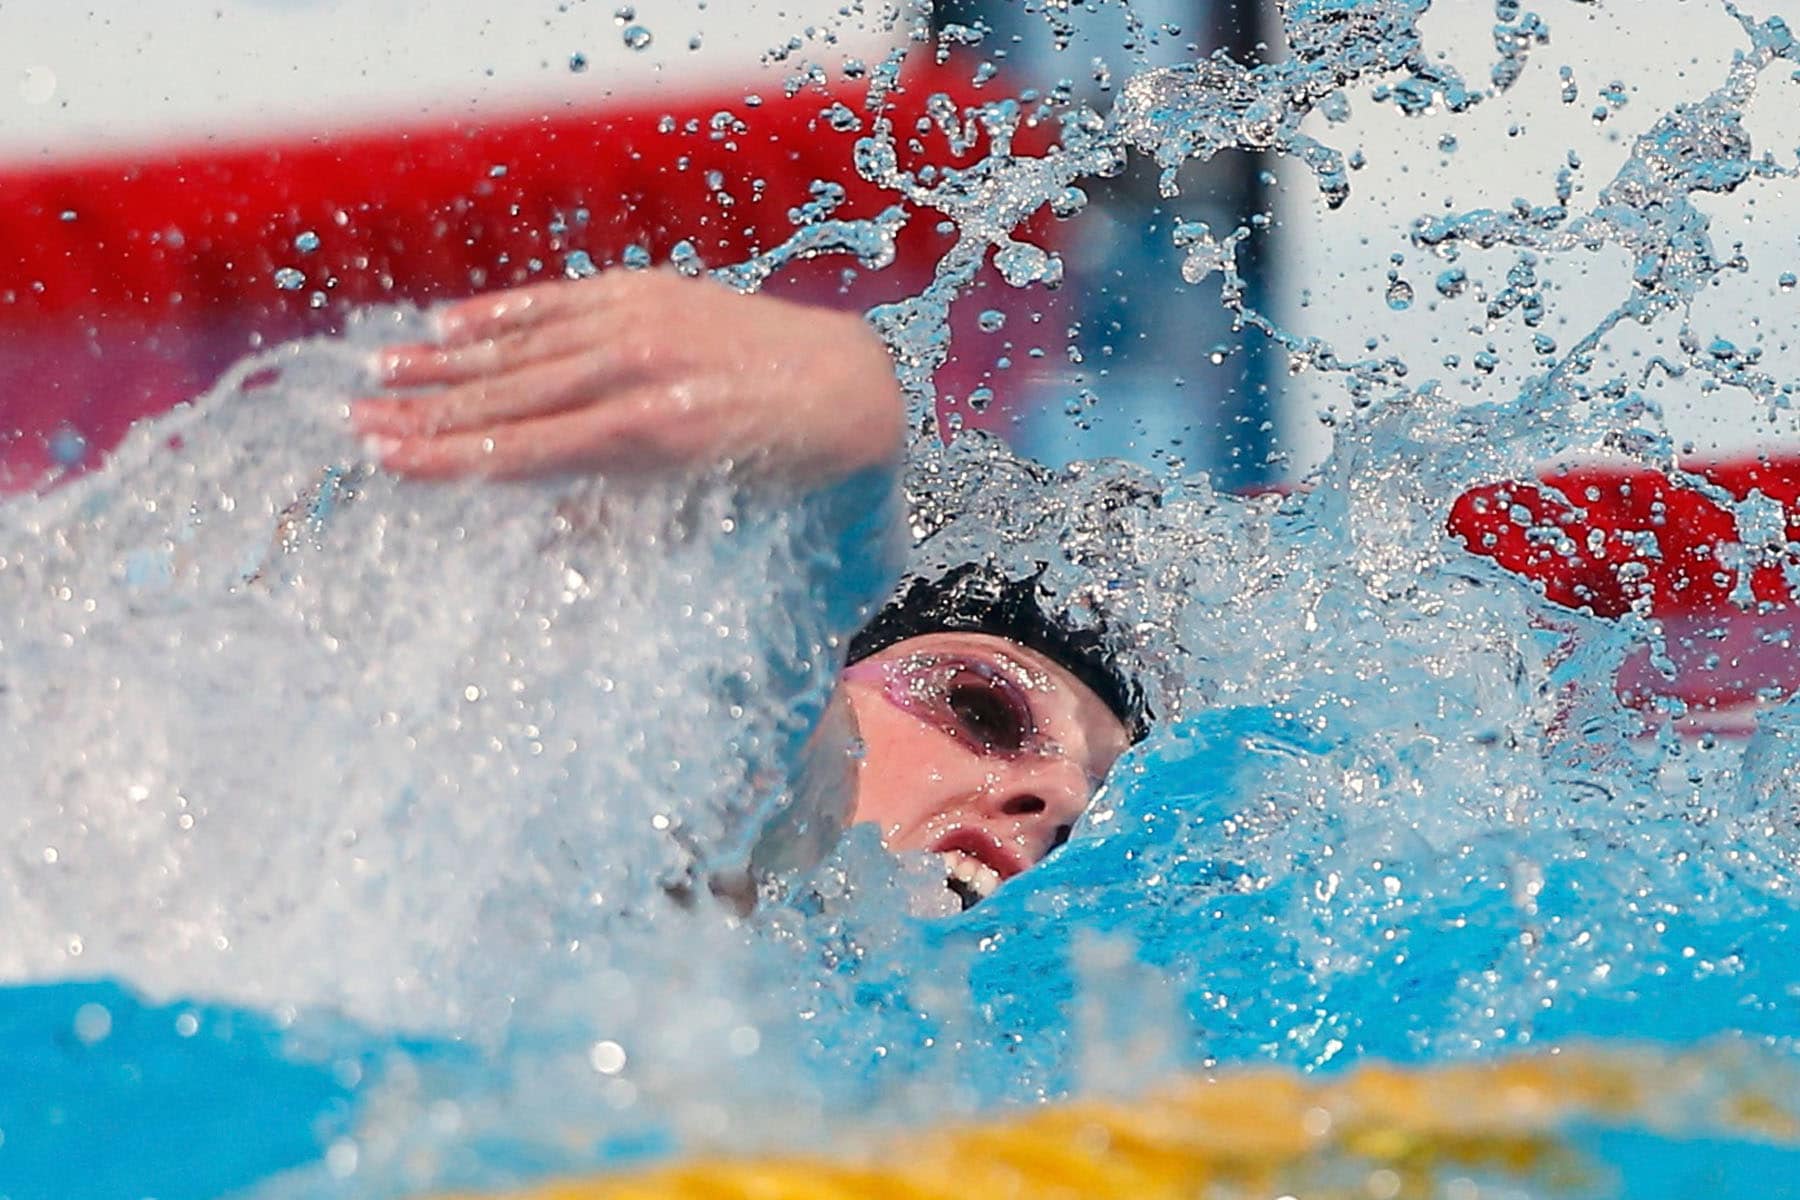 España. La nadadora Missy Franklin llevó ayer a Estados Unidos a imponerse en los 4x200m libres y su